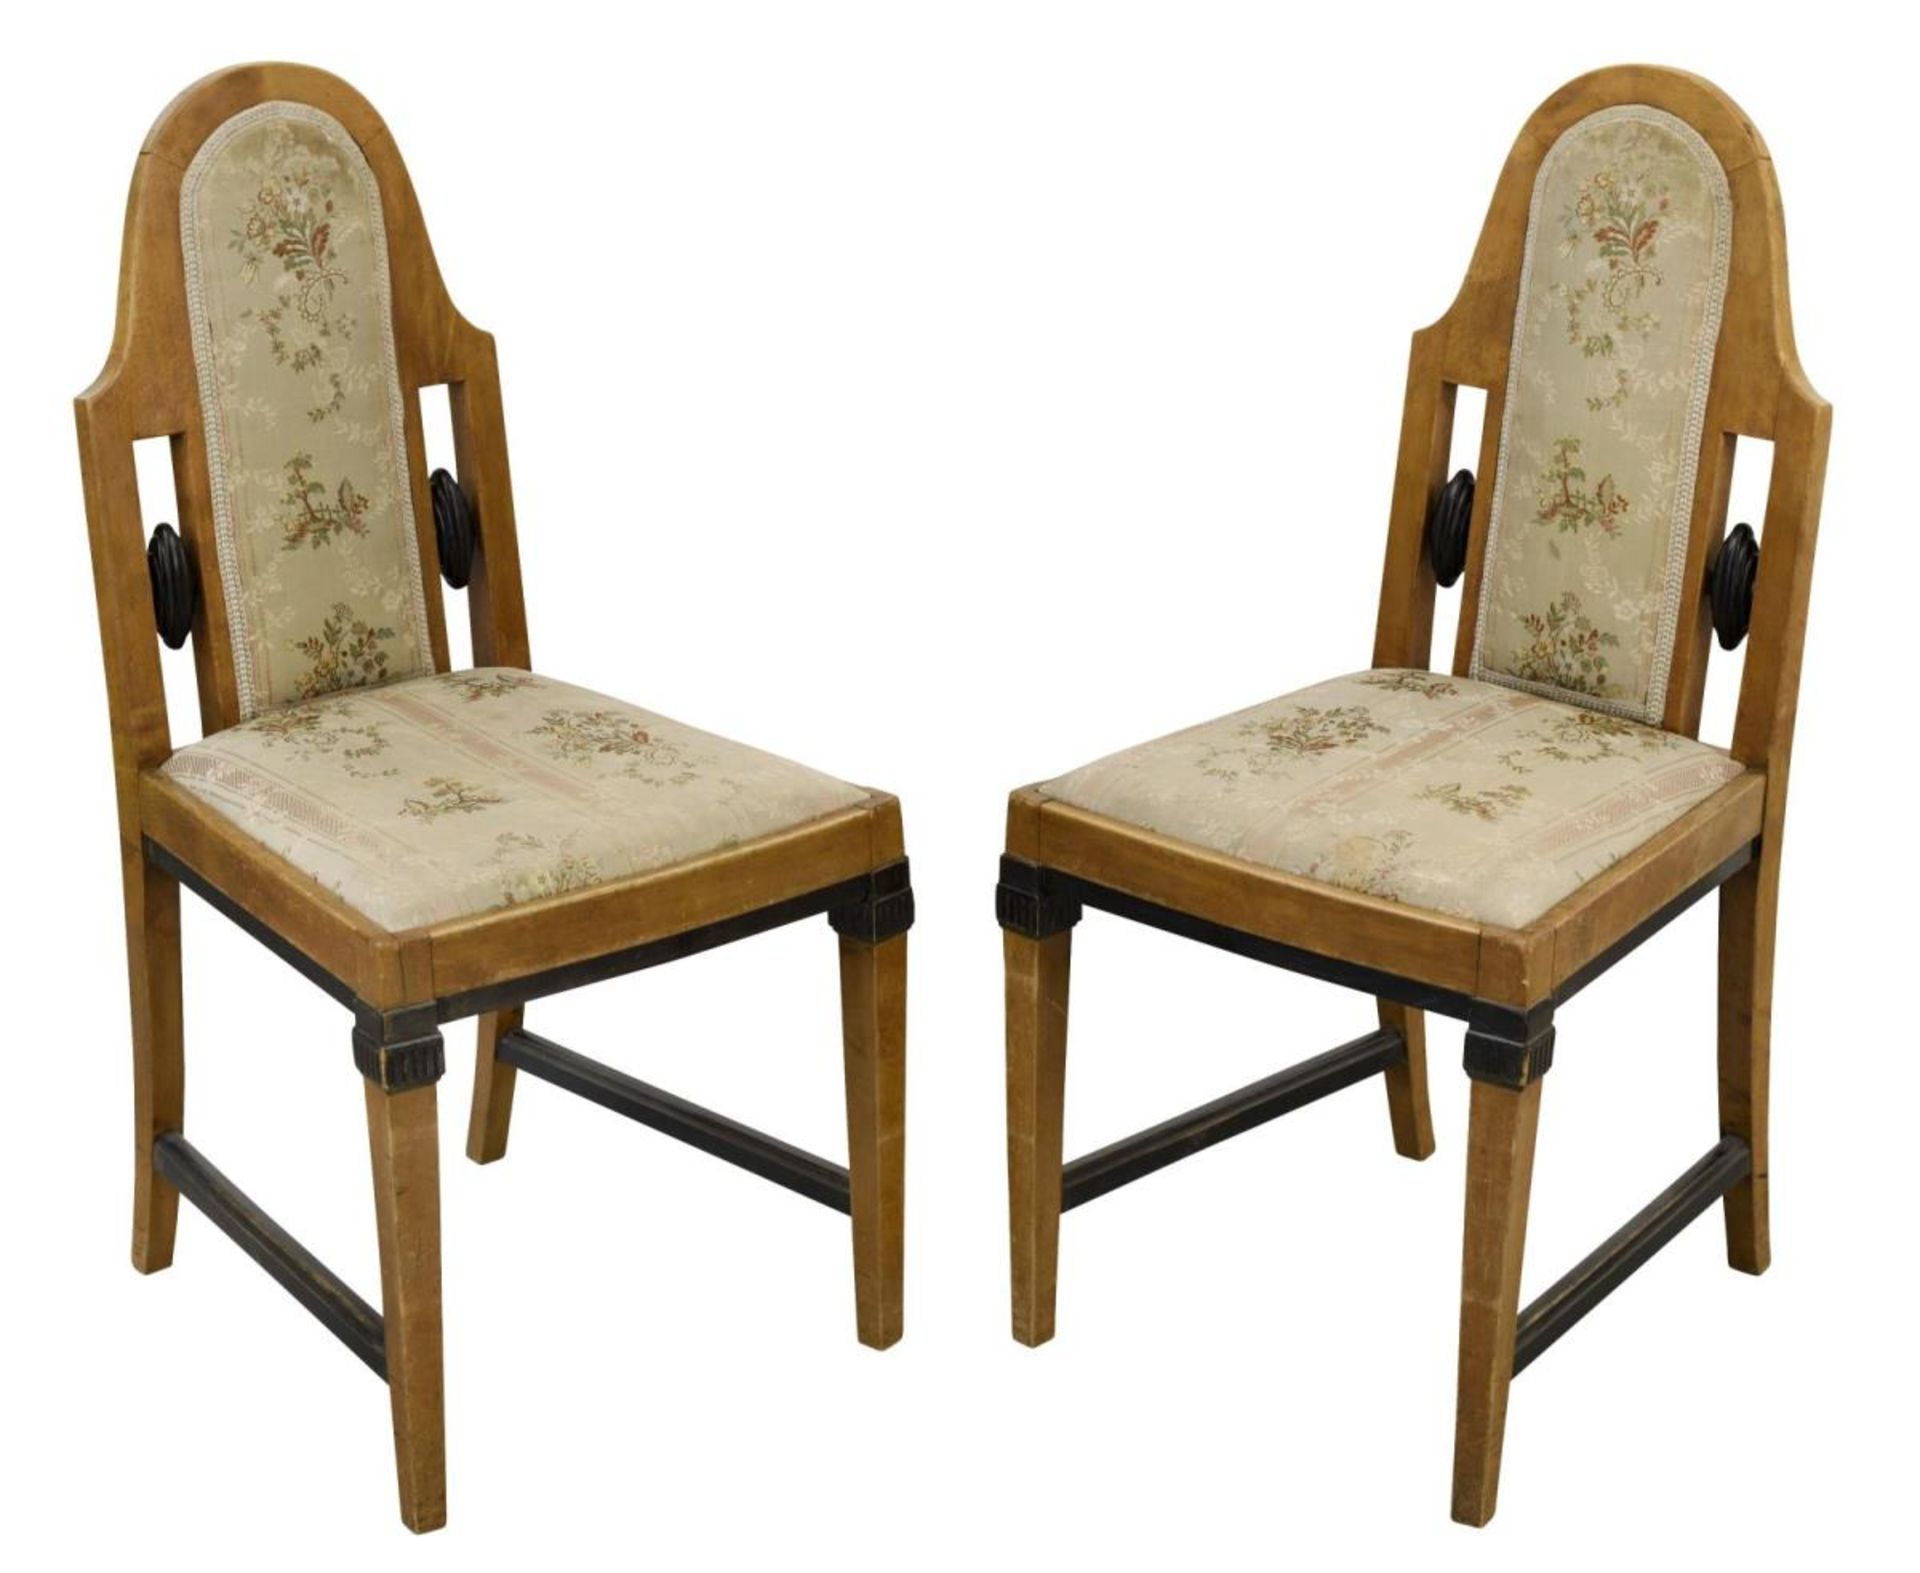 Ein Paar Stühle. Birke (?) furniert, tlw. geschwärzt, gepolstert.